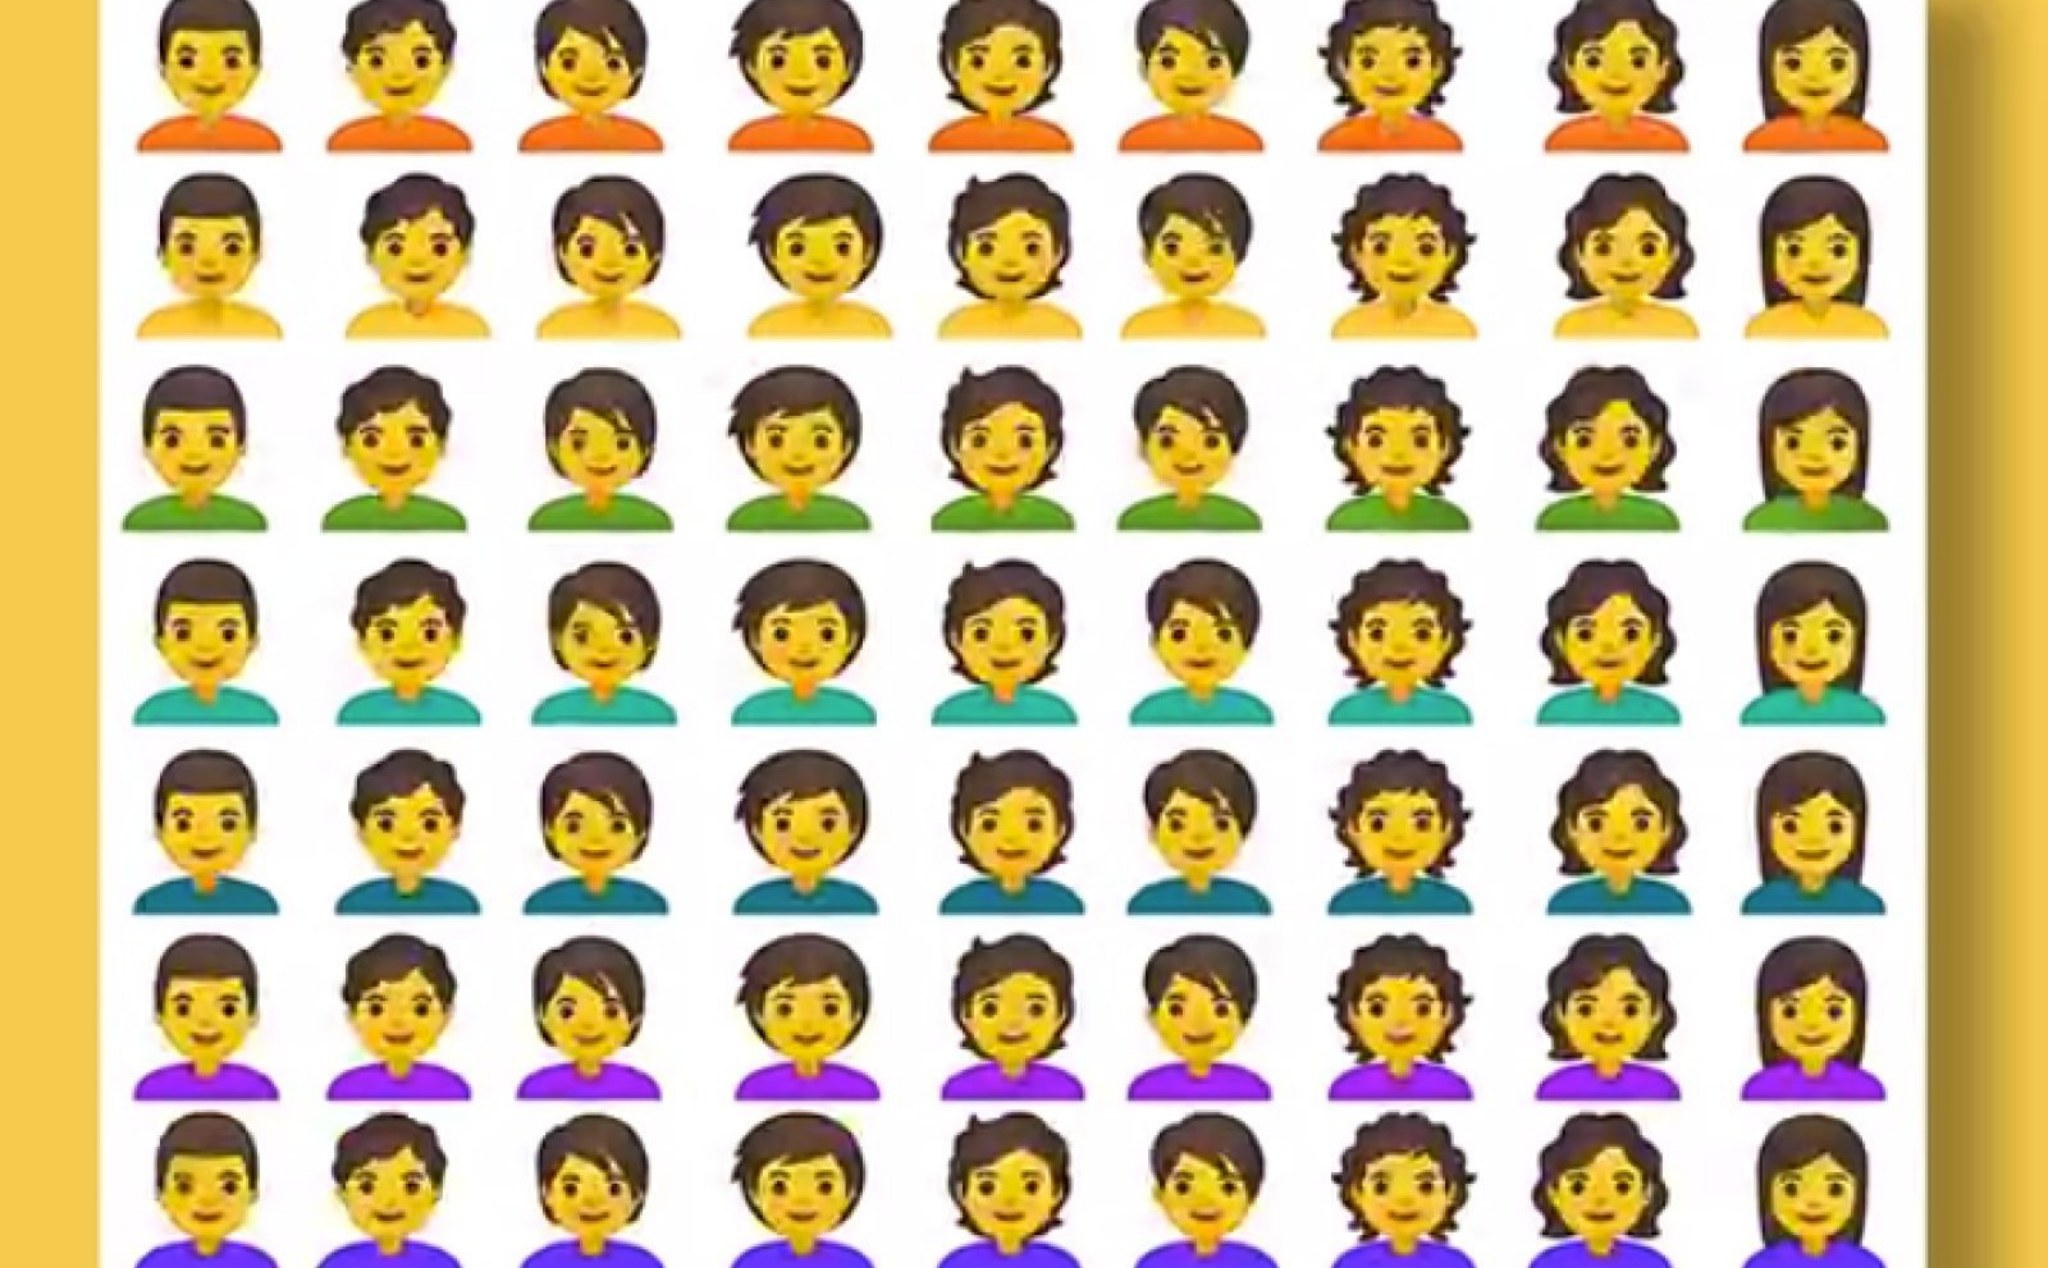 Android Q sẽ có thêm bộ Emoji mới với 53 nhân vật theo dạng lưỡng tính